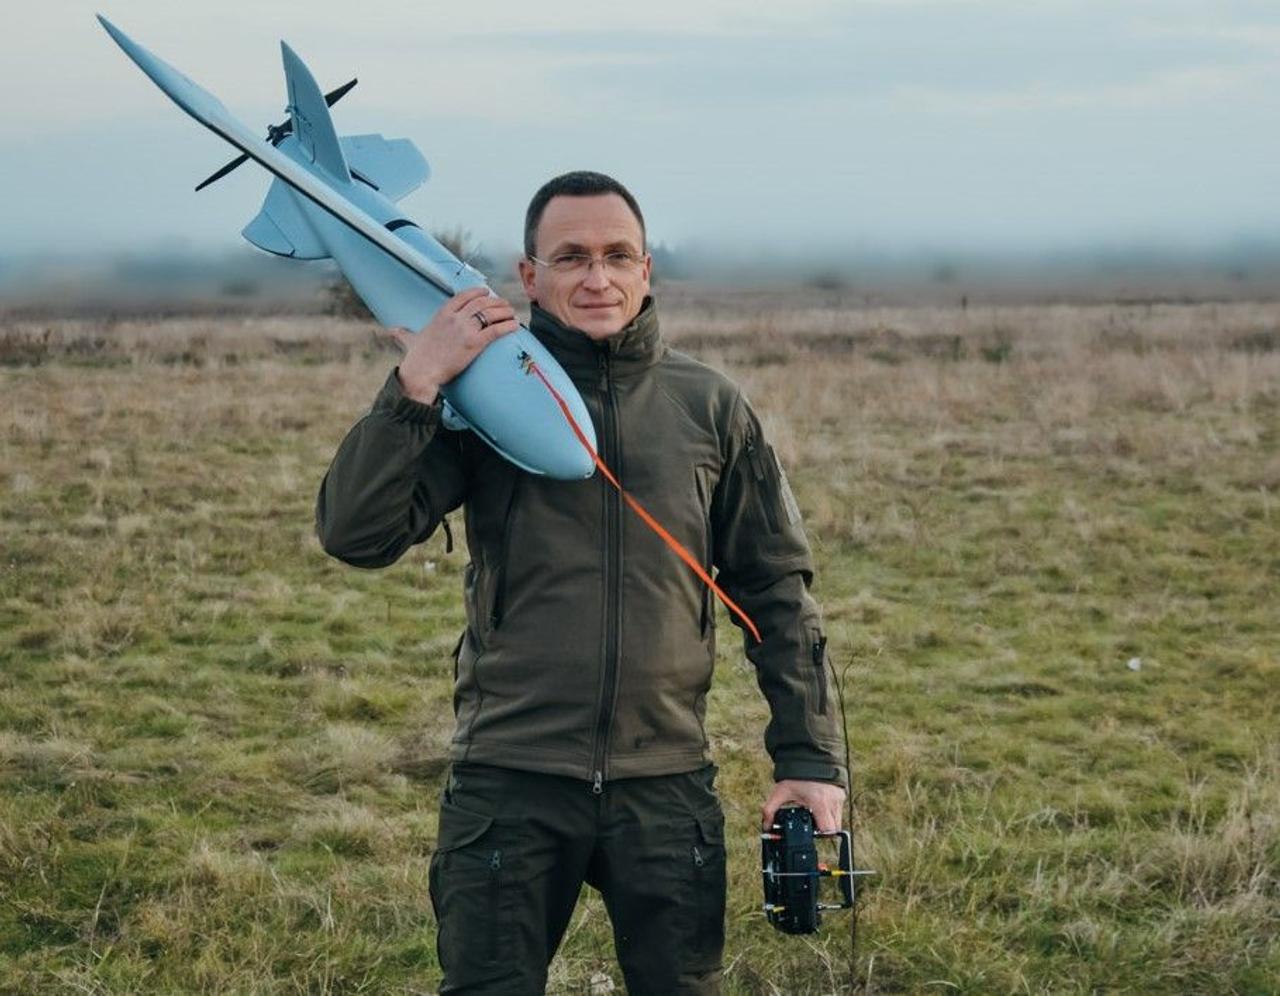 Авиамоделисты из Днепра разработали разведывательный беспилотник «Чаклун», который «невидим» для вражеских радаров